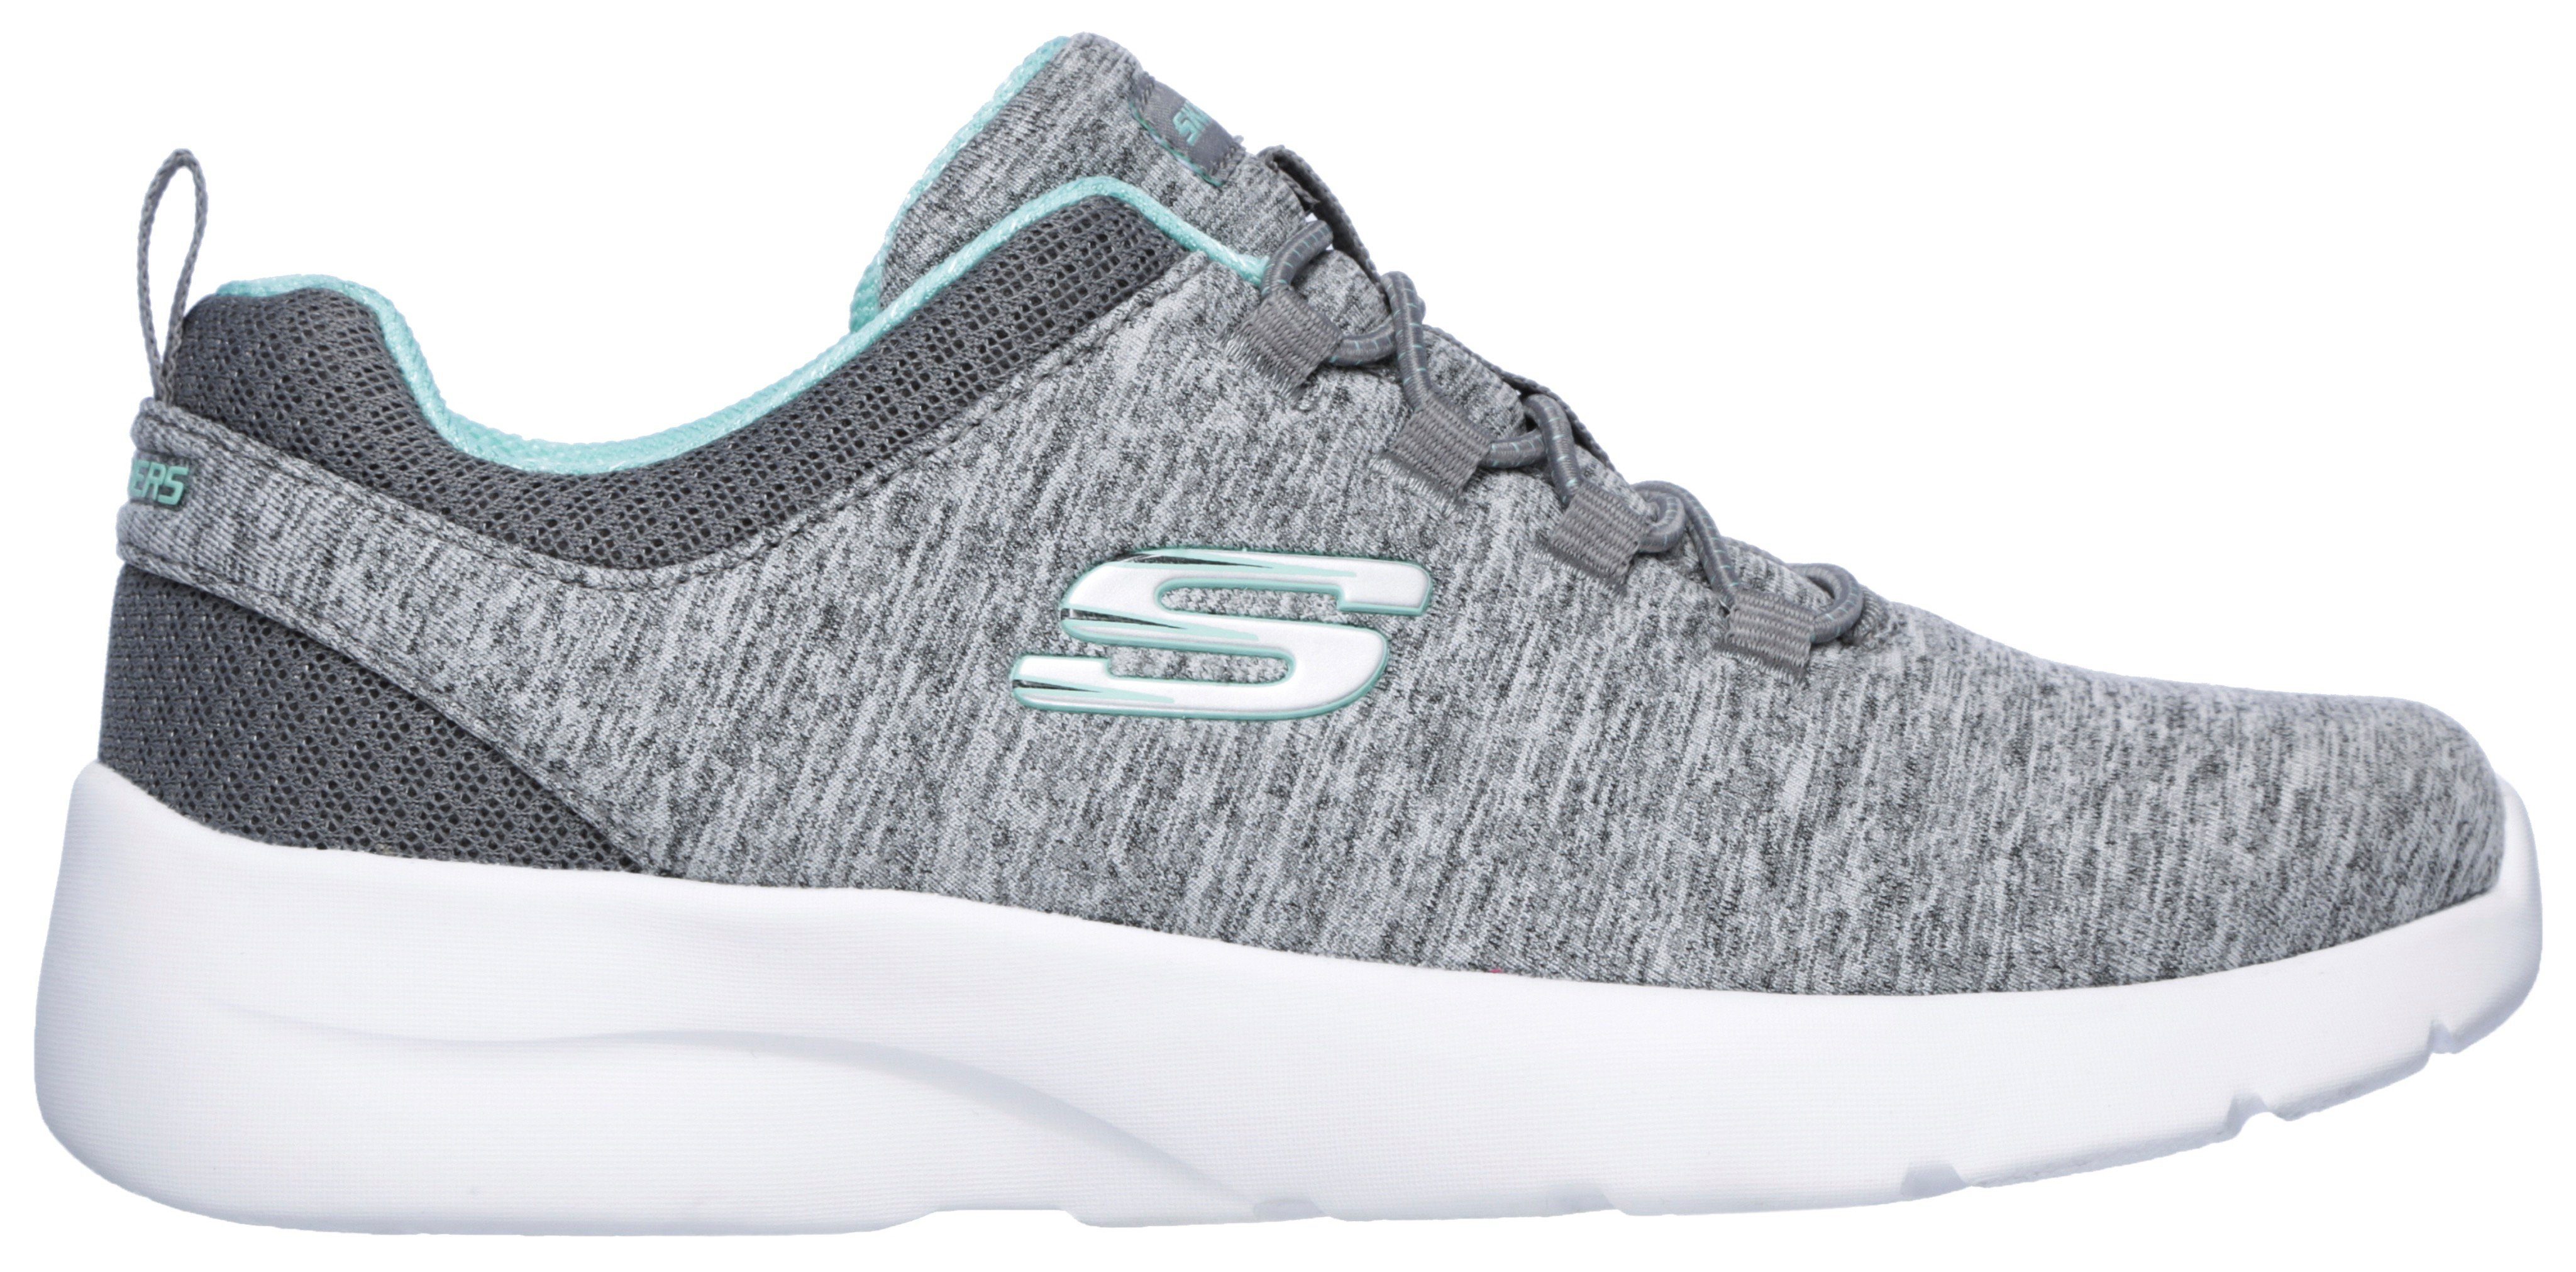 Skechers FLASH grau-mint für Sneaker geeignet A 2.0-IN Maschinenwäsche DYNAMIGHT Slip-On